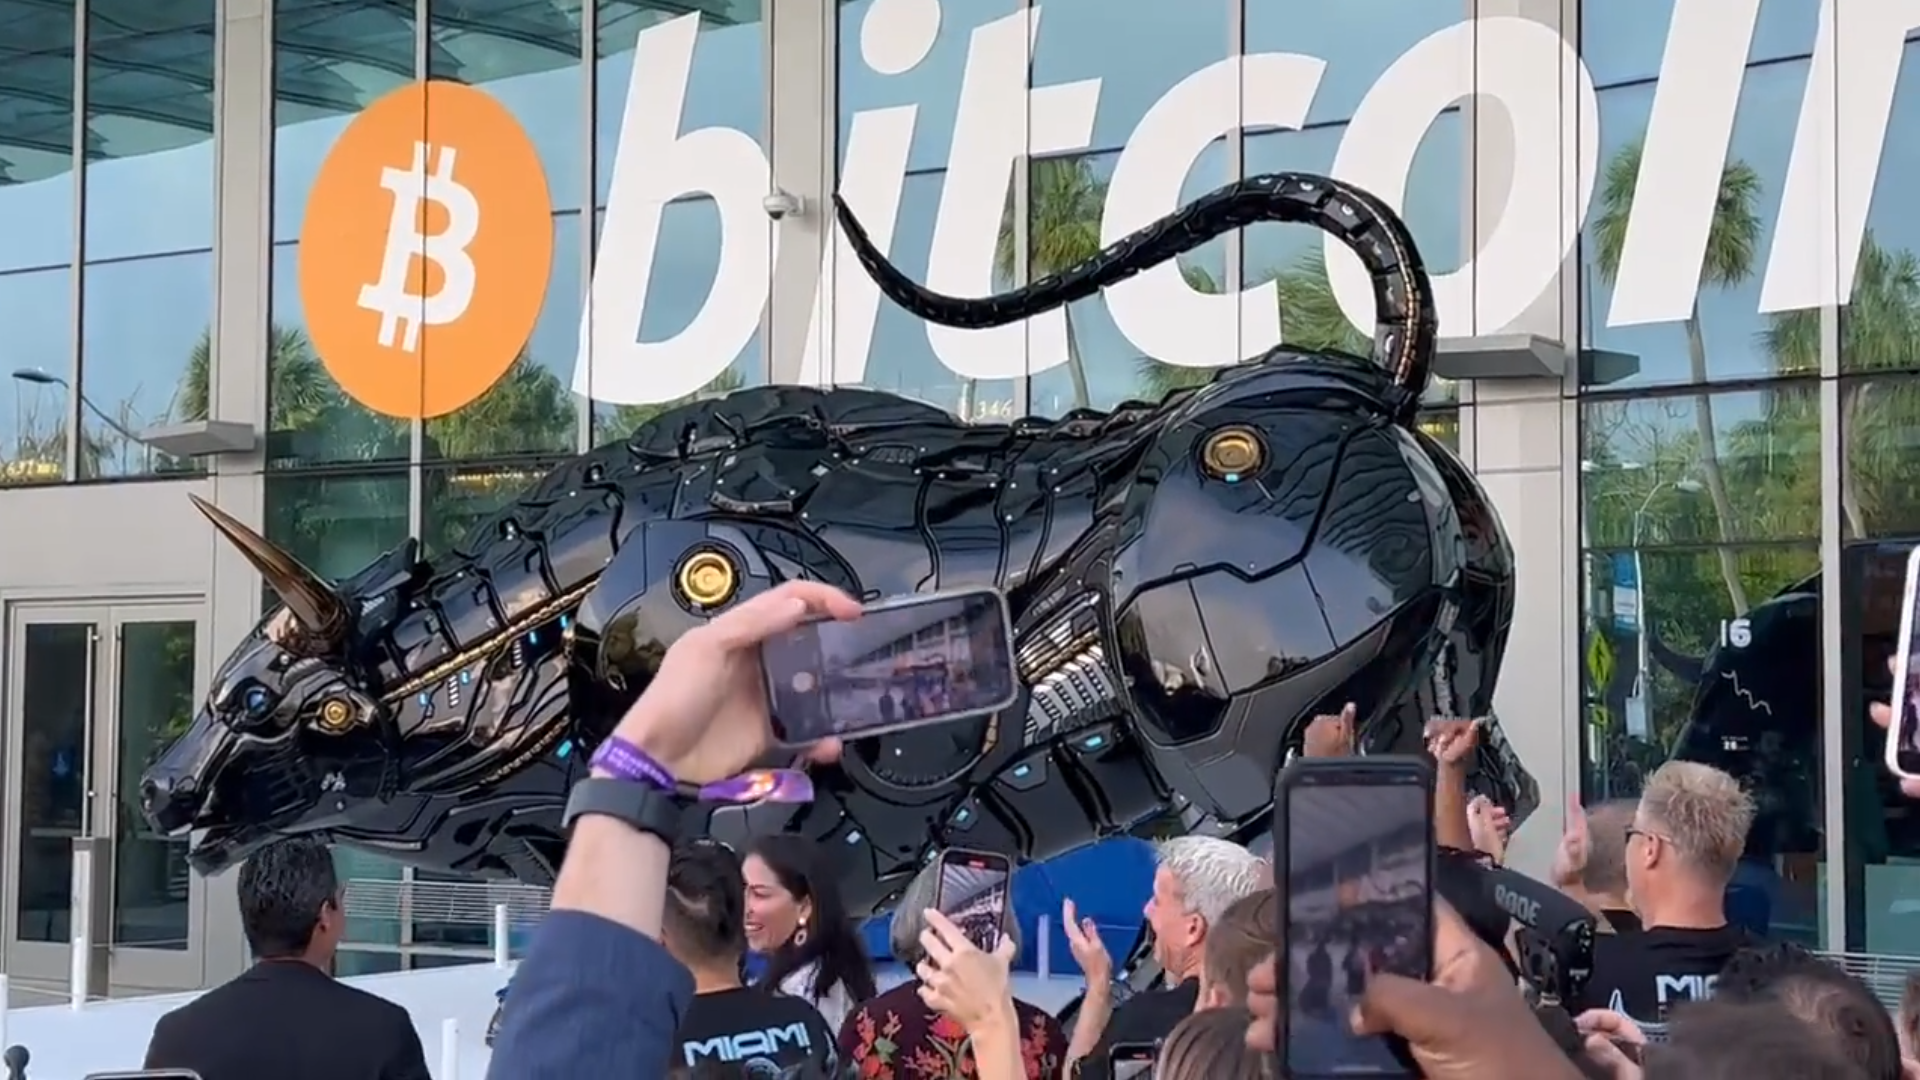 Konference Bitcoin 2022: Starosta Miami odhalil sochu býka s laserovýma očima